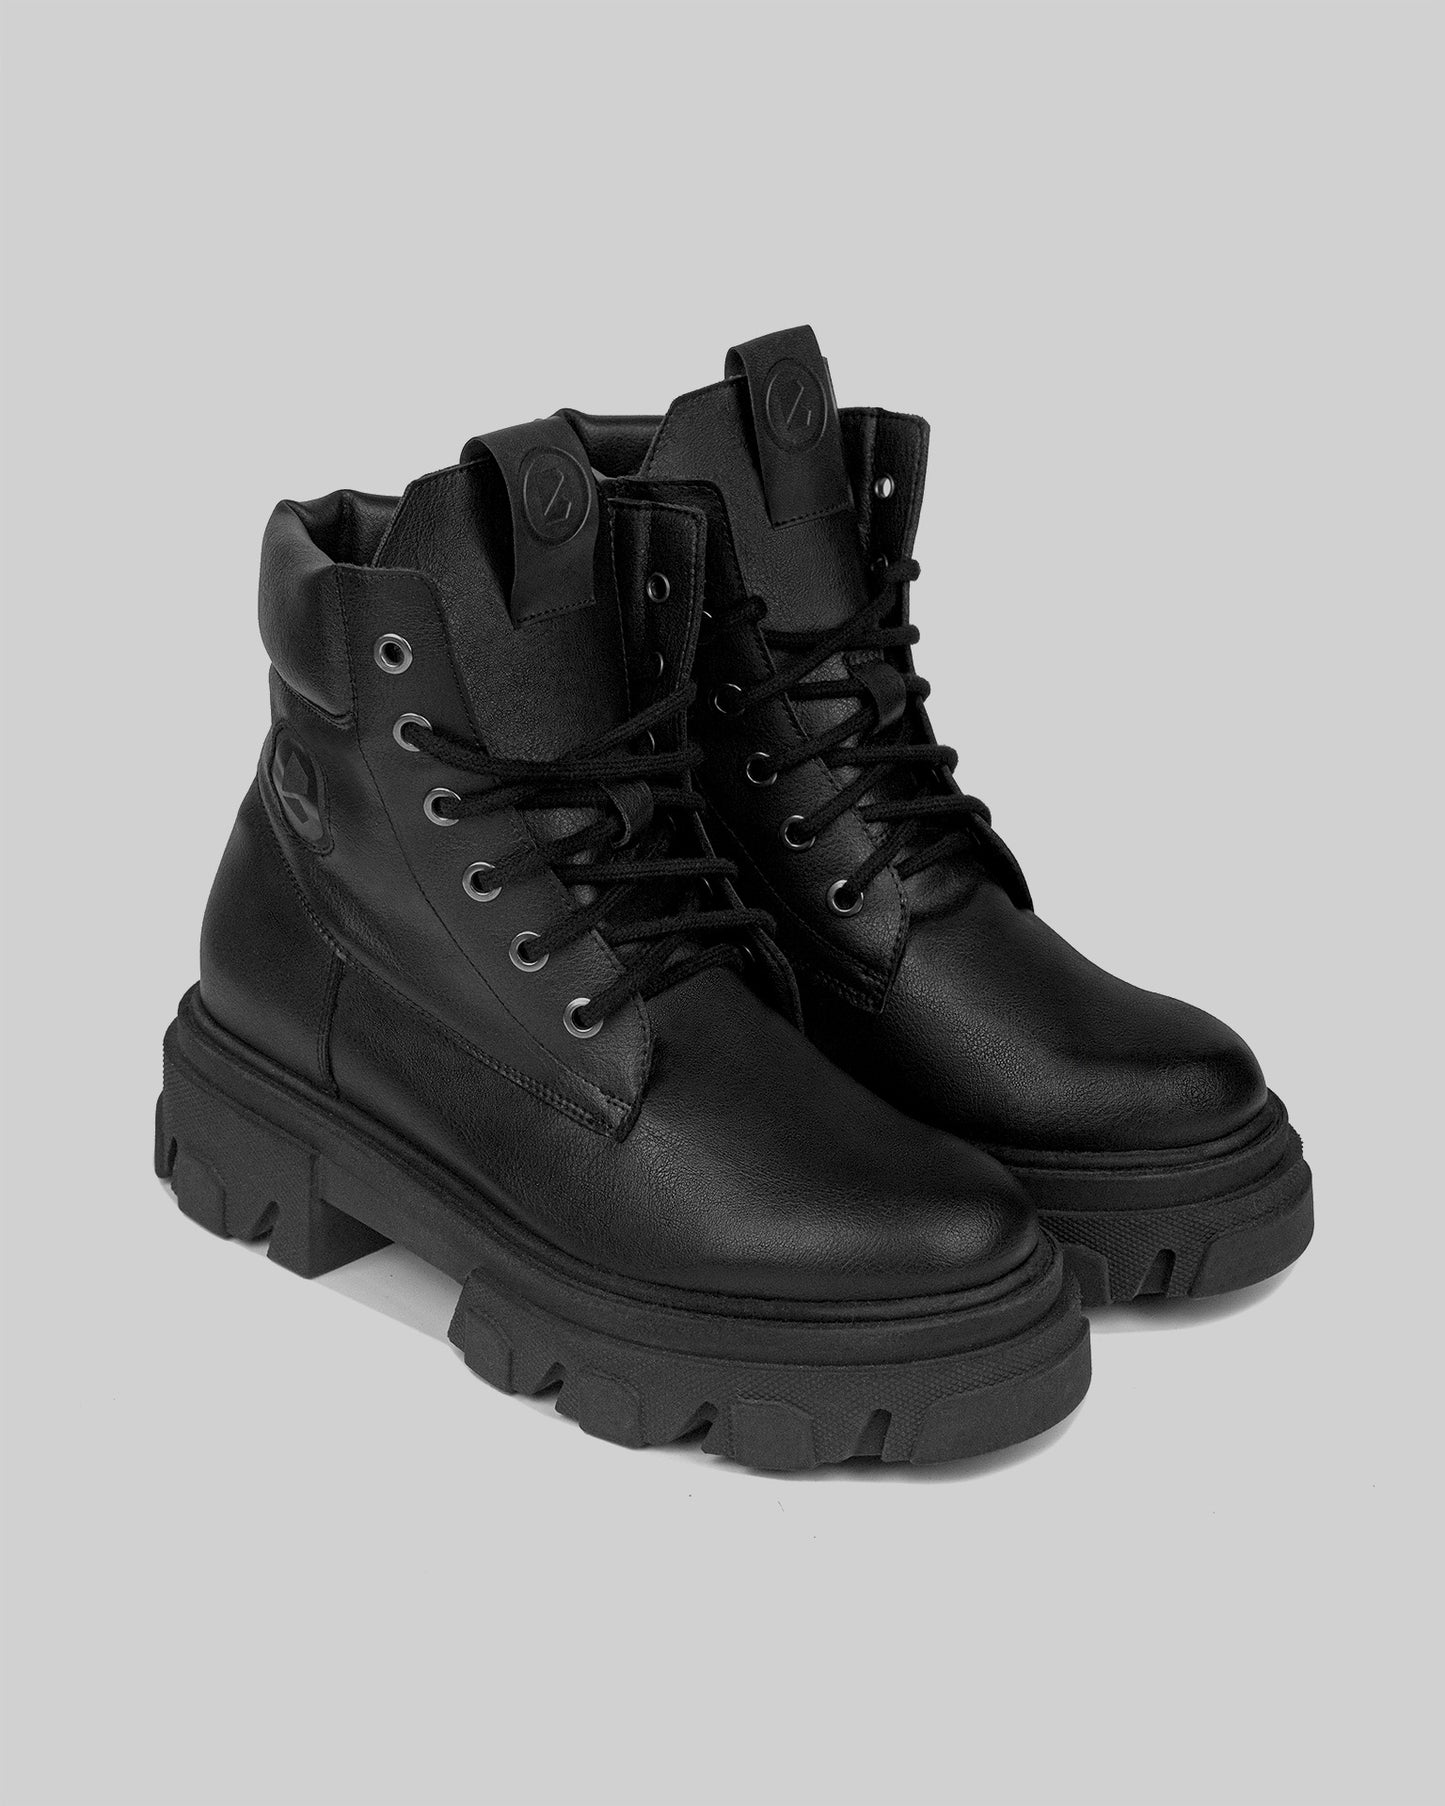 Riot Boots krótkie wegańskie botki damskie w stylu “worker boots”